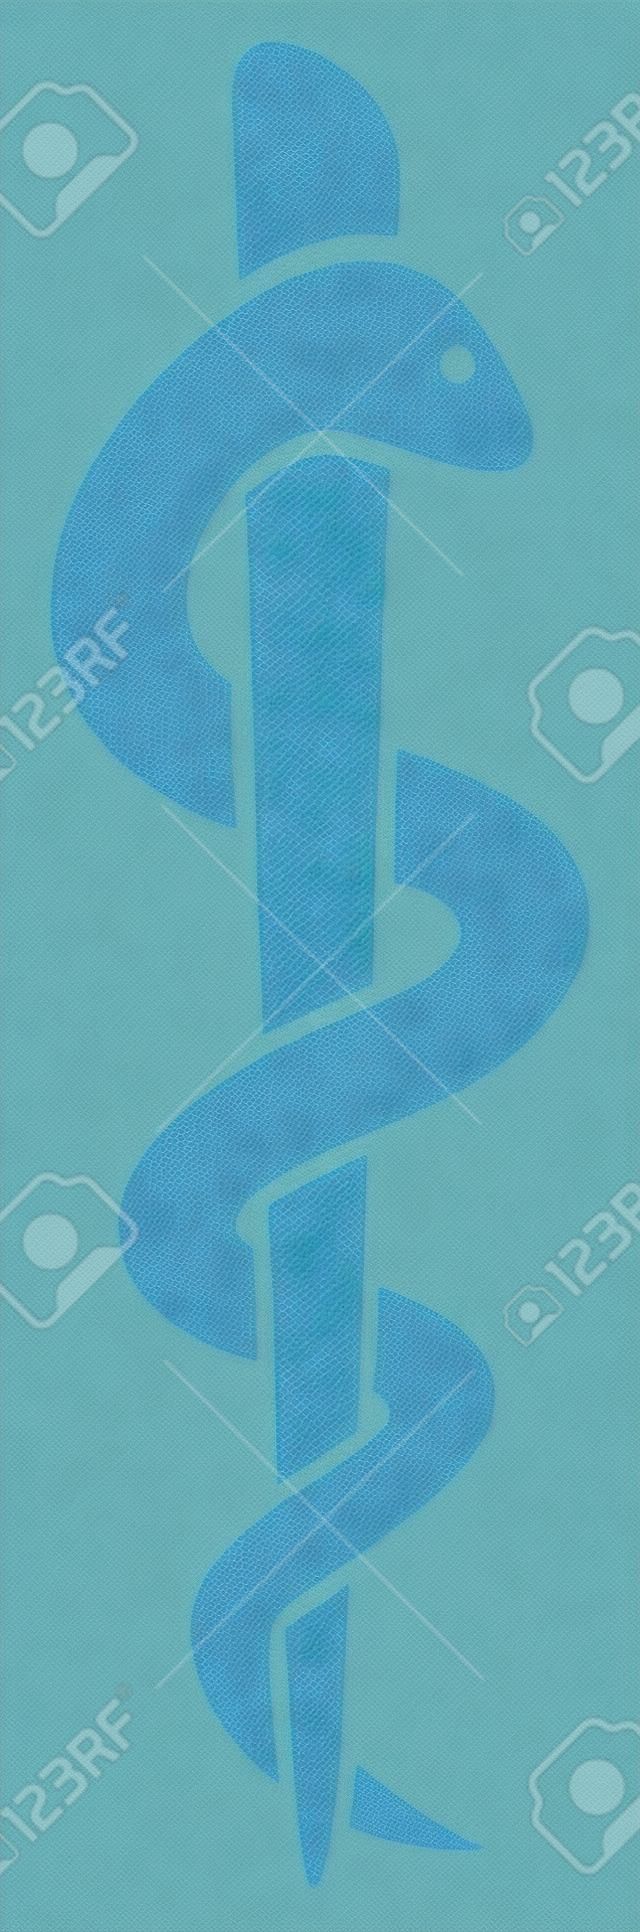 medical symbol caduceus snake with stick  emblem for drugstore or medicine, blue medical sign, symbol of pharmacy, pharmacy snake symbol 